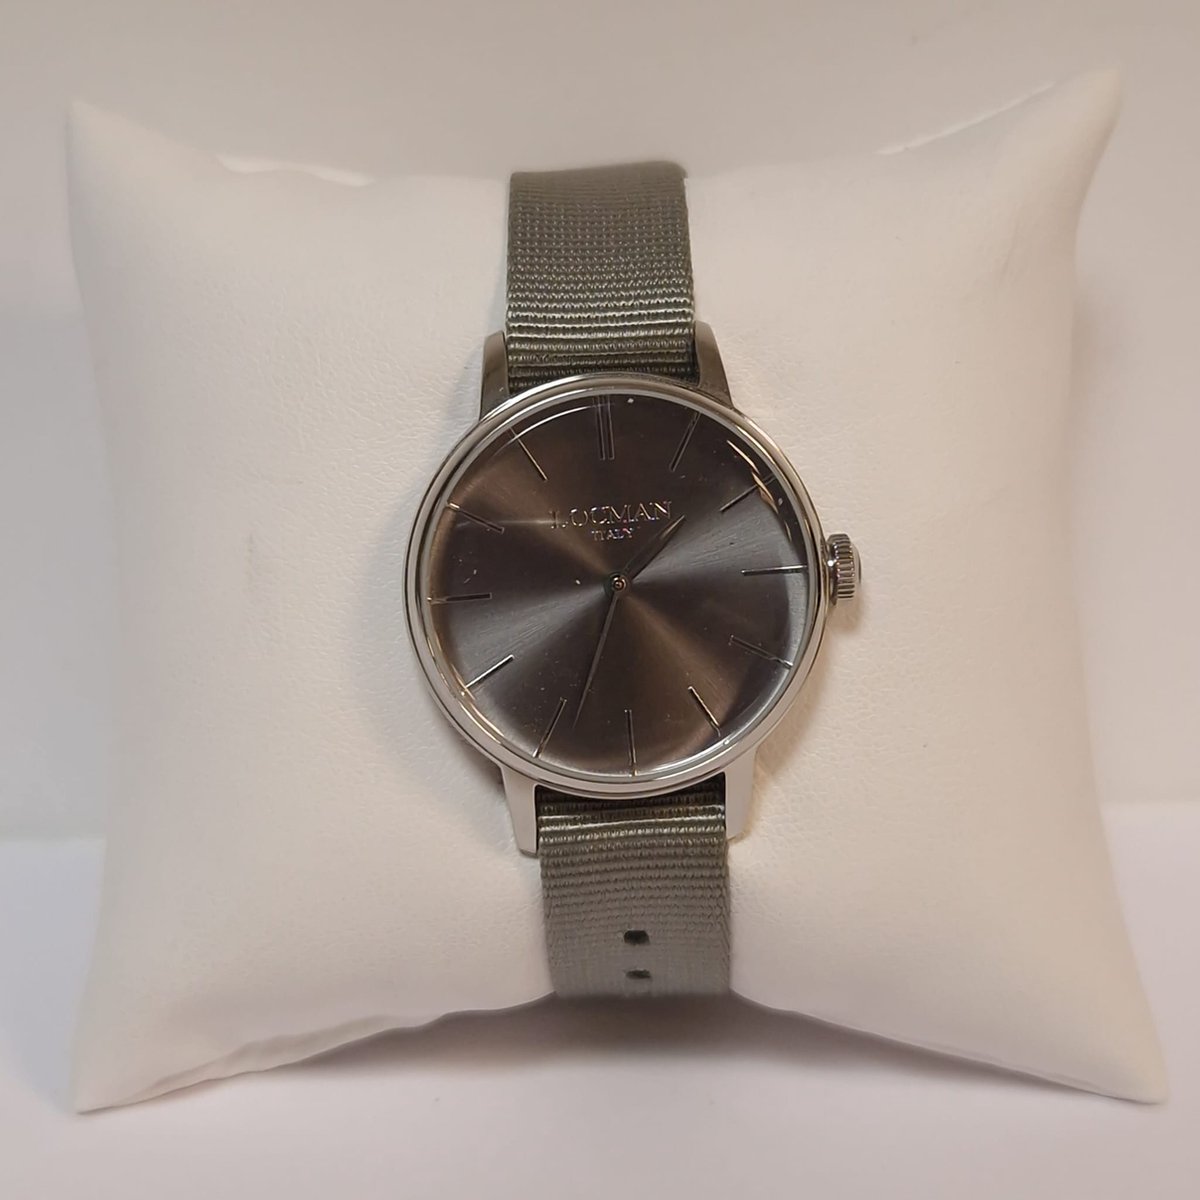 Locman - vrouwen horloge - 1960 - 0253A07A-00GYNKNI - uitverkoop Juwelier Verlinden St. Hubert - van €189,= voor €159,=